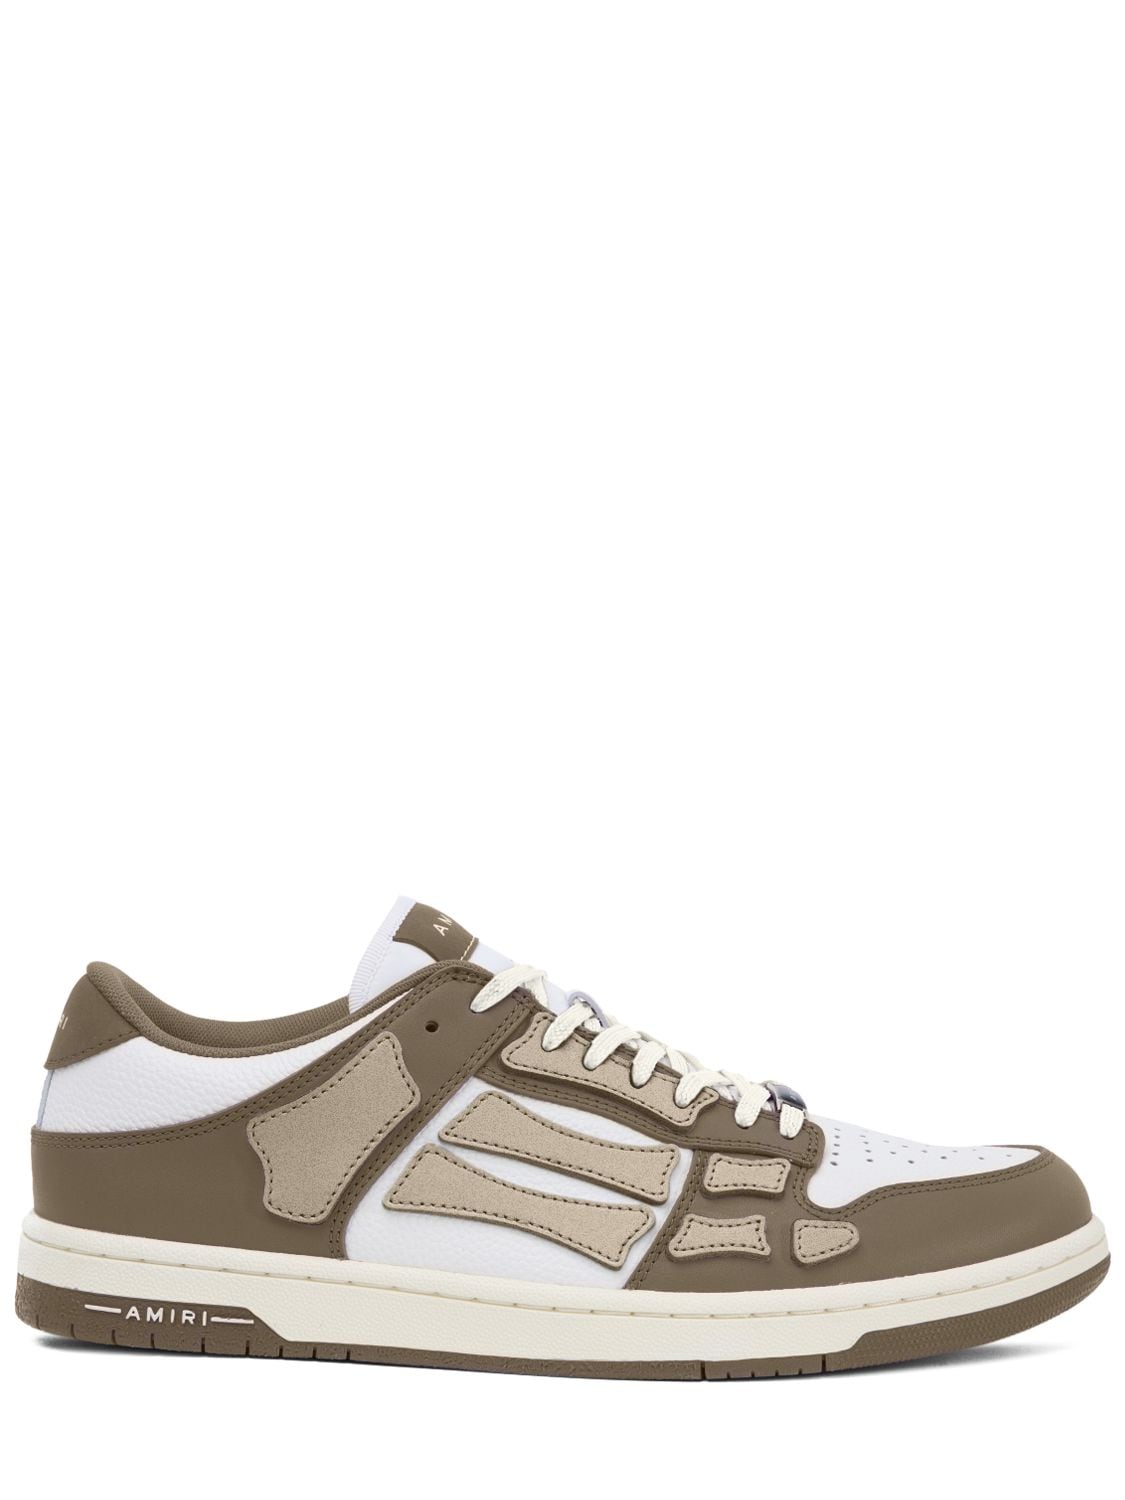 Shop Amiri Skeltop Low Sneakers In Brown,beige